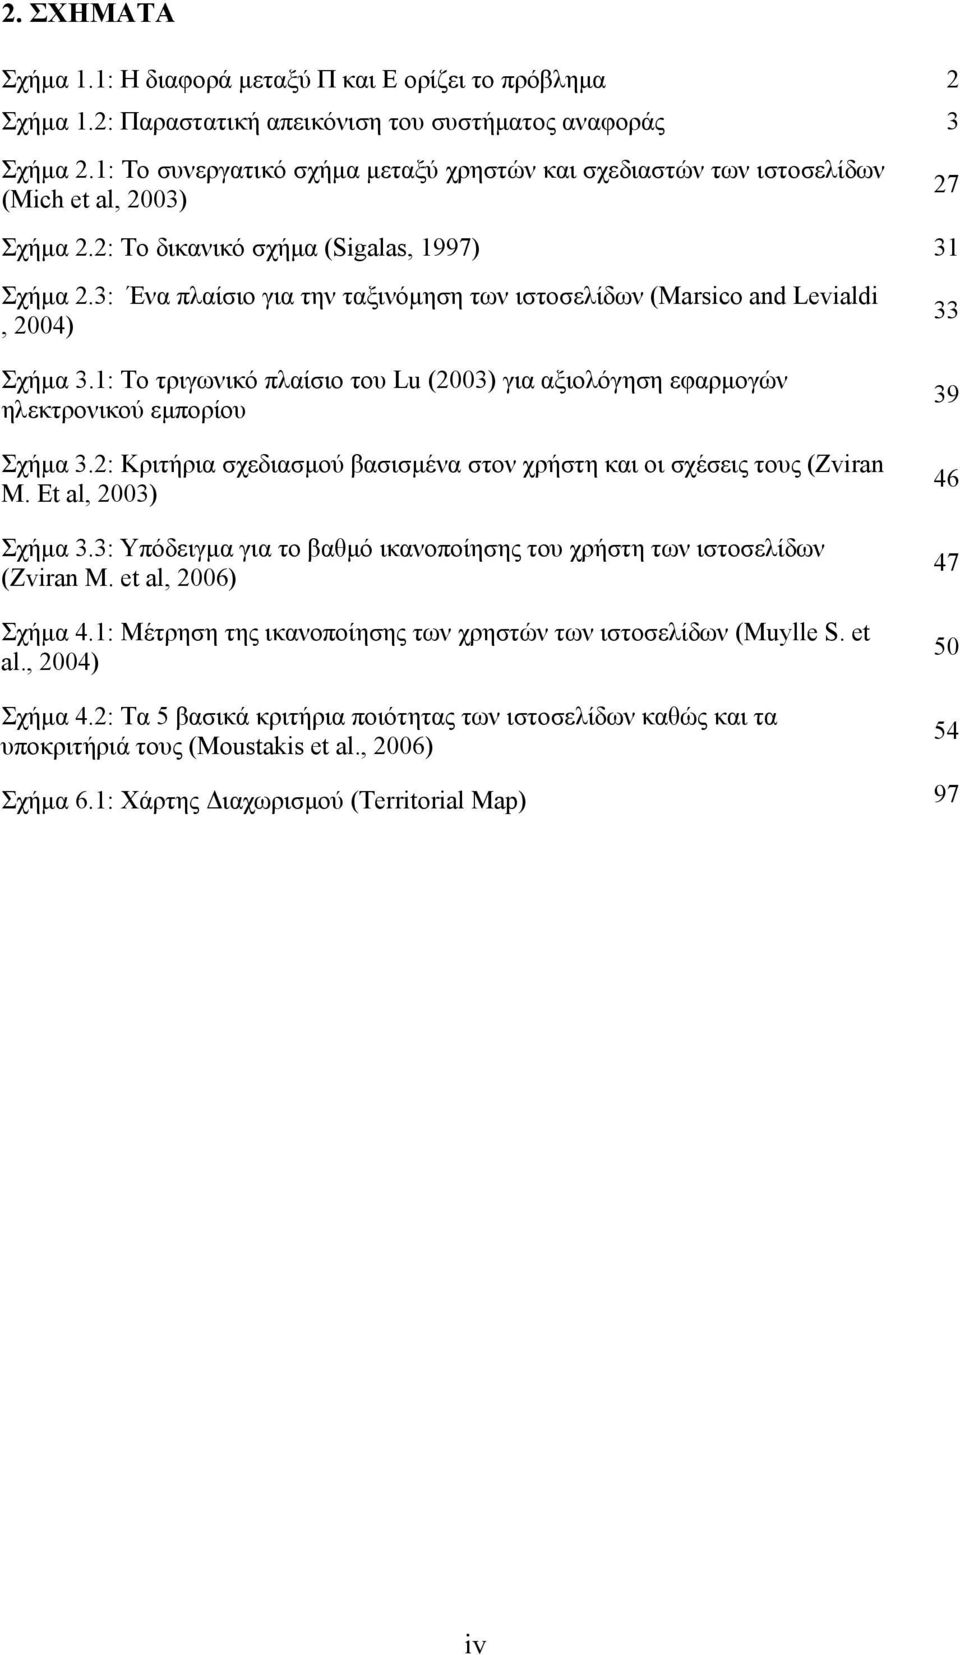 3: Ένα πλαίσιο για την ταξινόμηση των ιστοσελίδων (Marsico and Levialdi, 2004) 27 33 Σχήμα 3.1: Το τριγωνικό πλαίσιο του Lu (2003) για αξιολόγηση εφαρμογών ηλεκτρονικού εμπορίου Σχήμα 3.